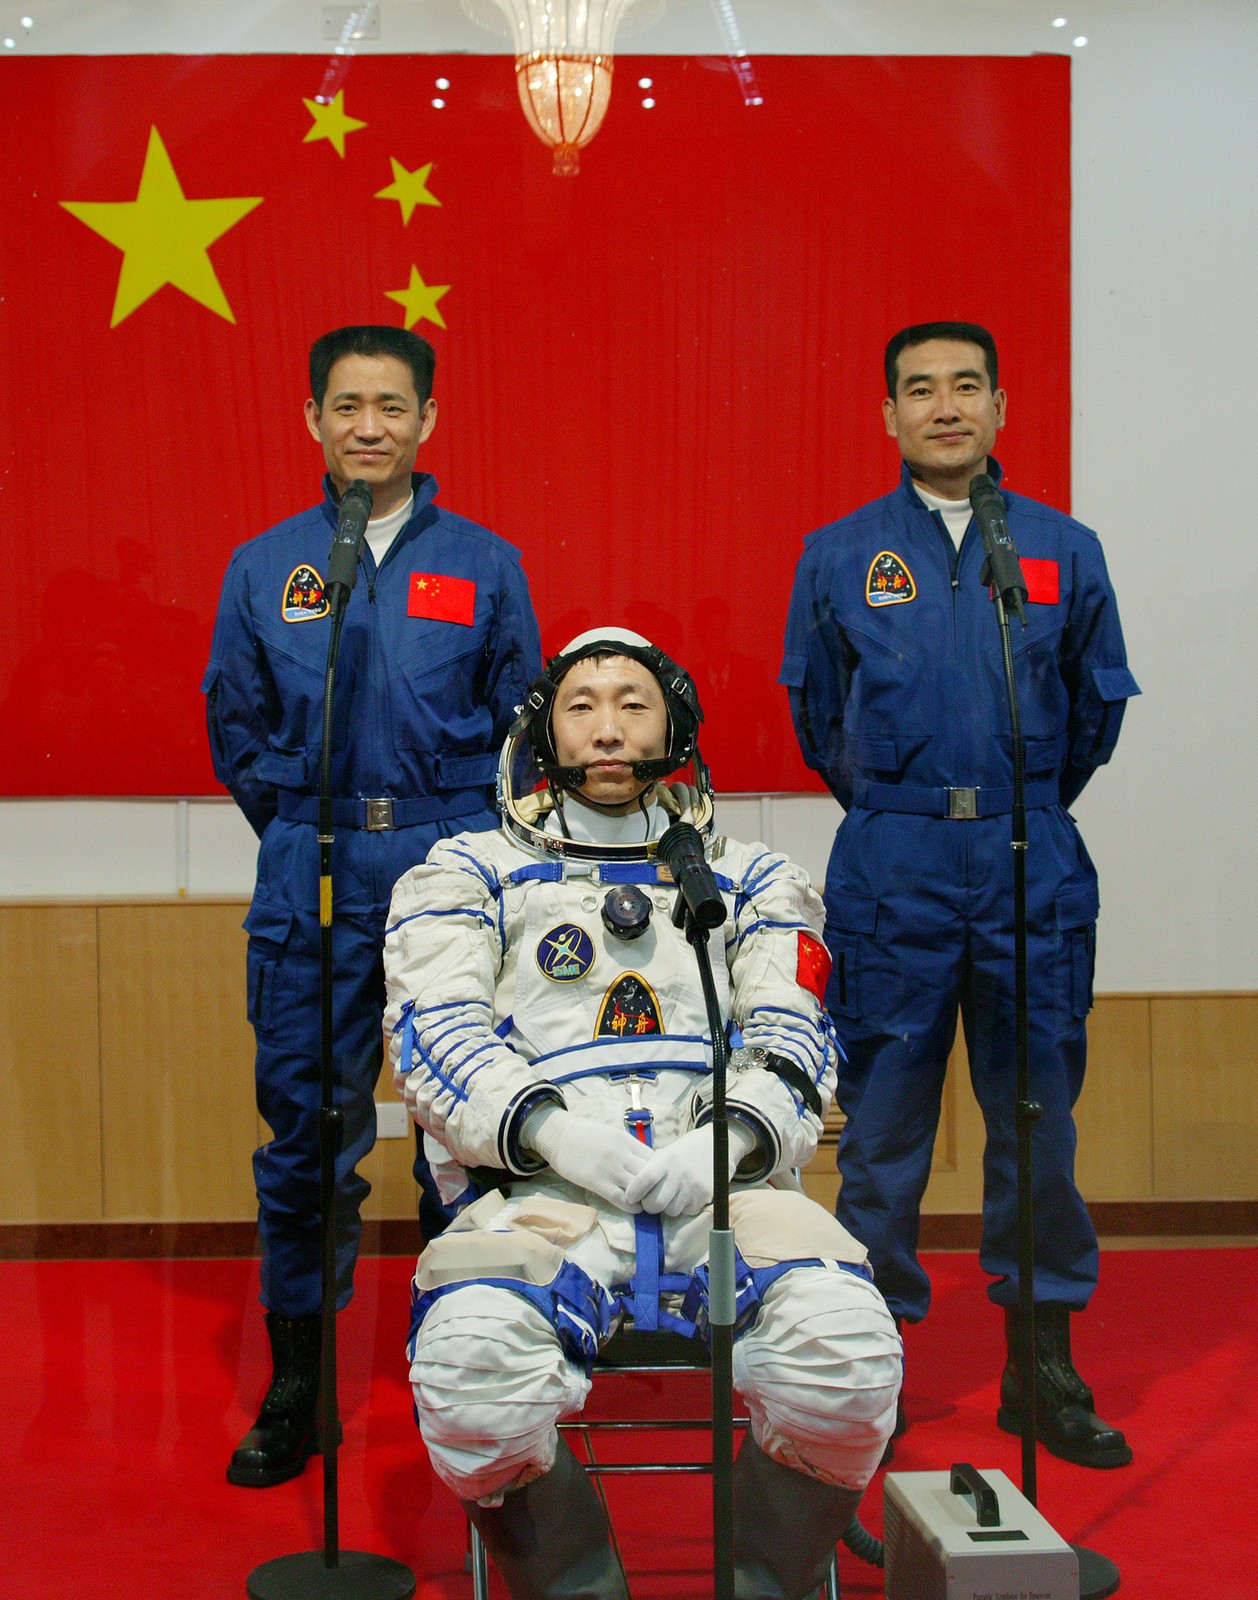 中国人首次进入自己的空间站 3名航天员顺利入驻“天和”-中央-湖北机关党建网